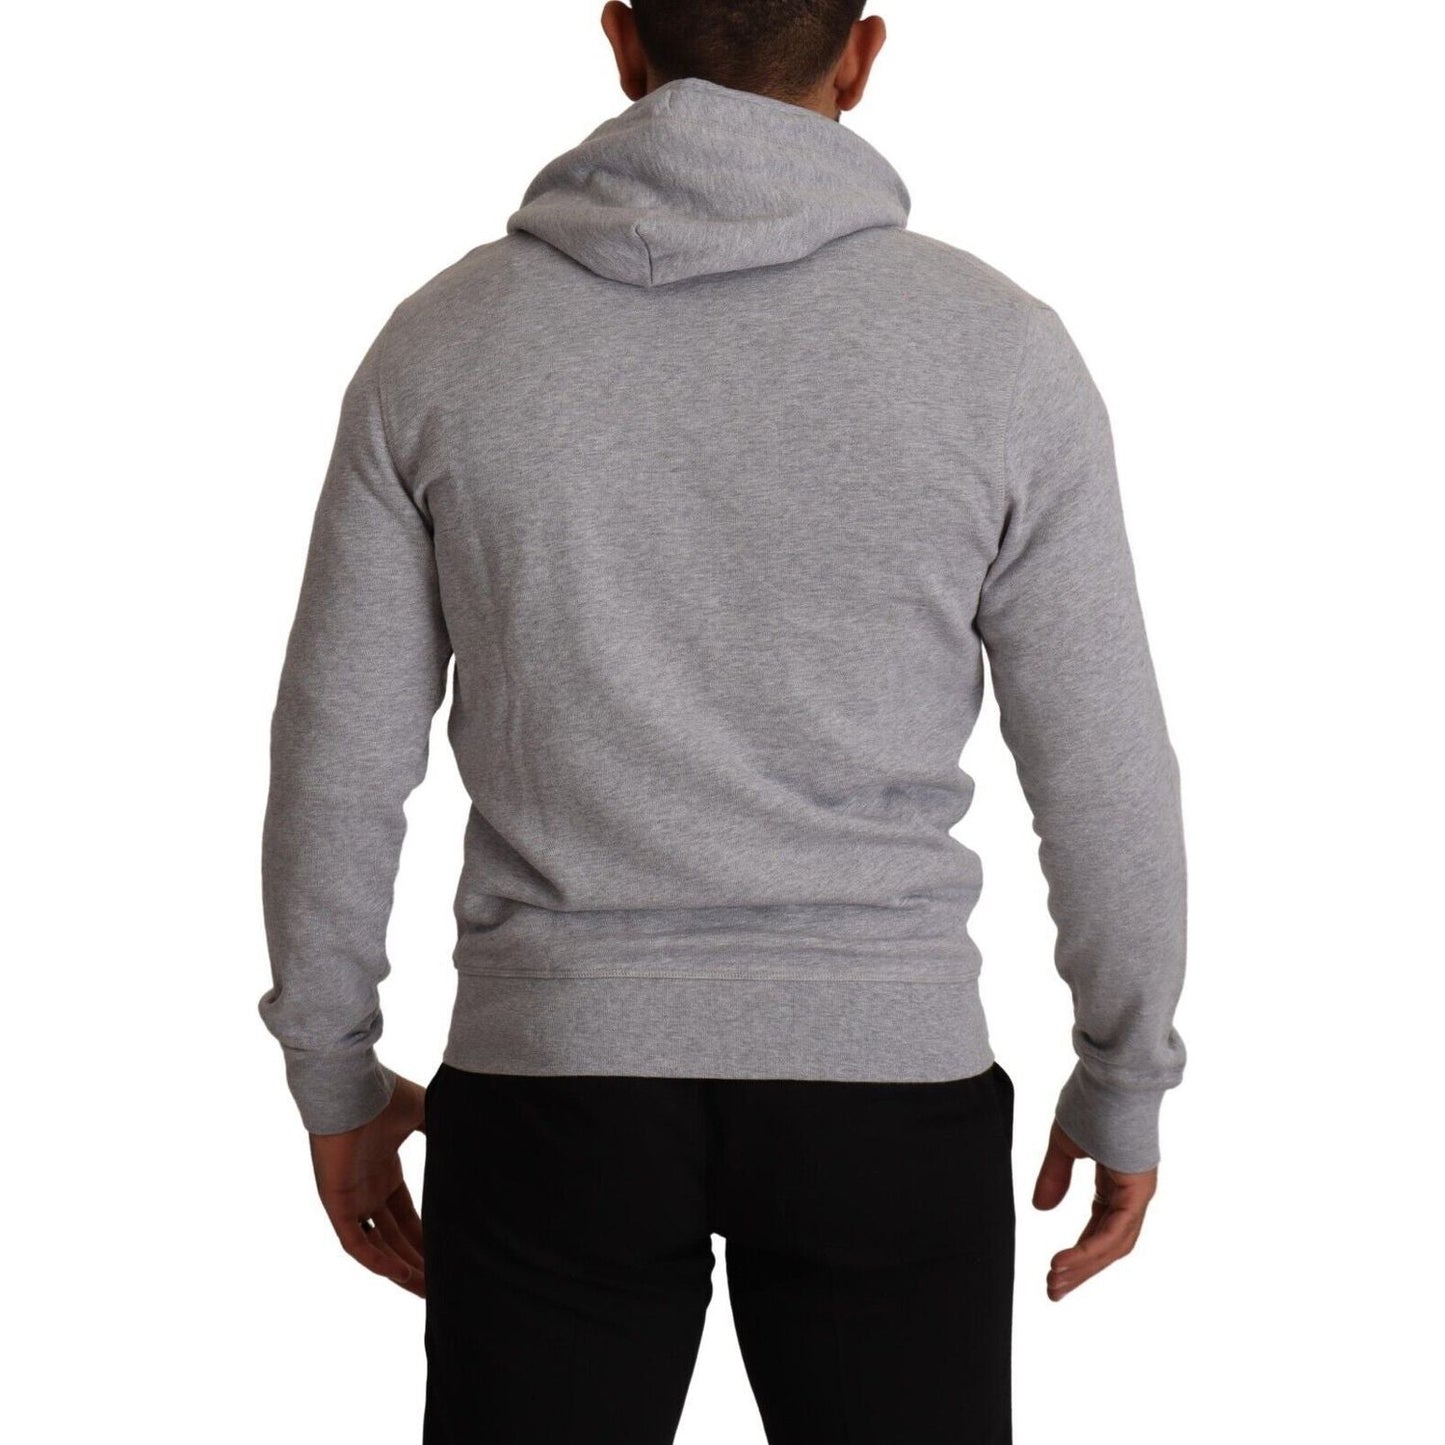 Hackett Elegant Hackett Full Zip Hooded Sweater gray-full-zip-hooded-cotton-sweatshirt-sweater